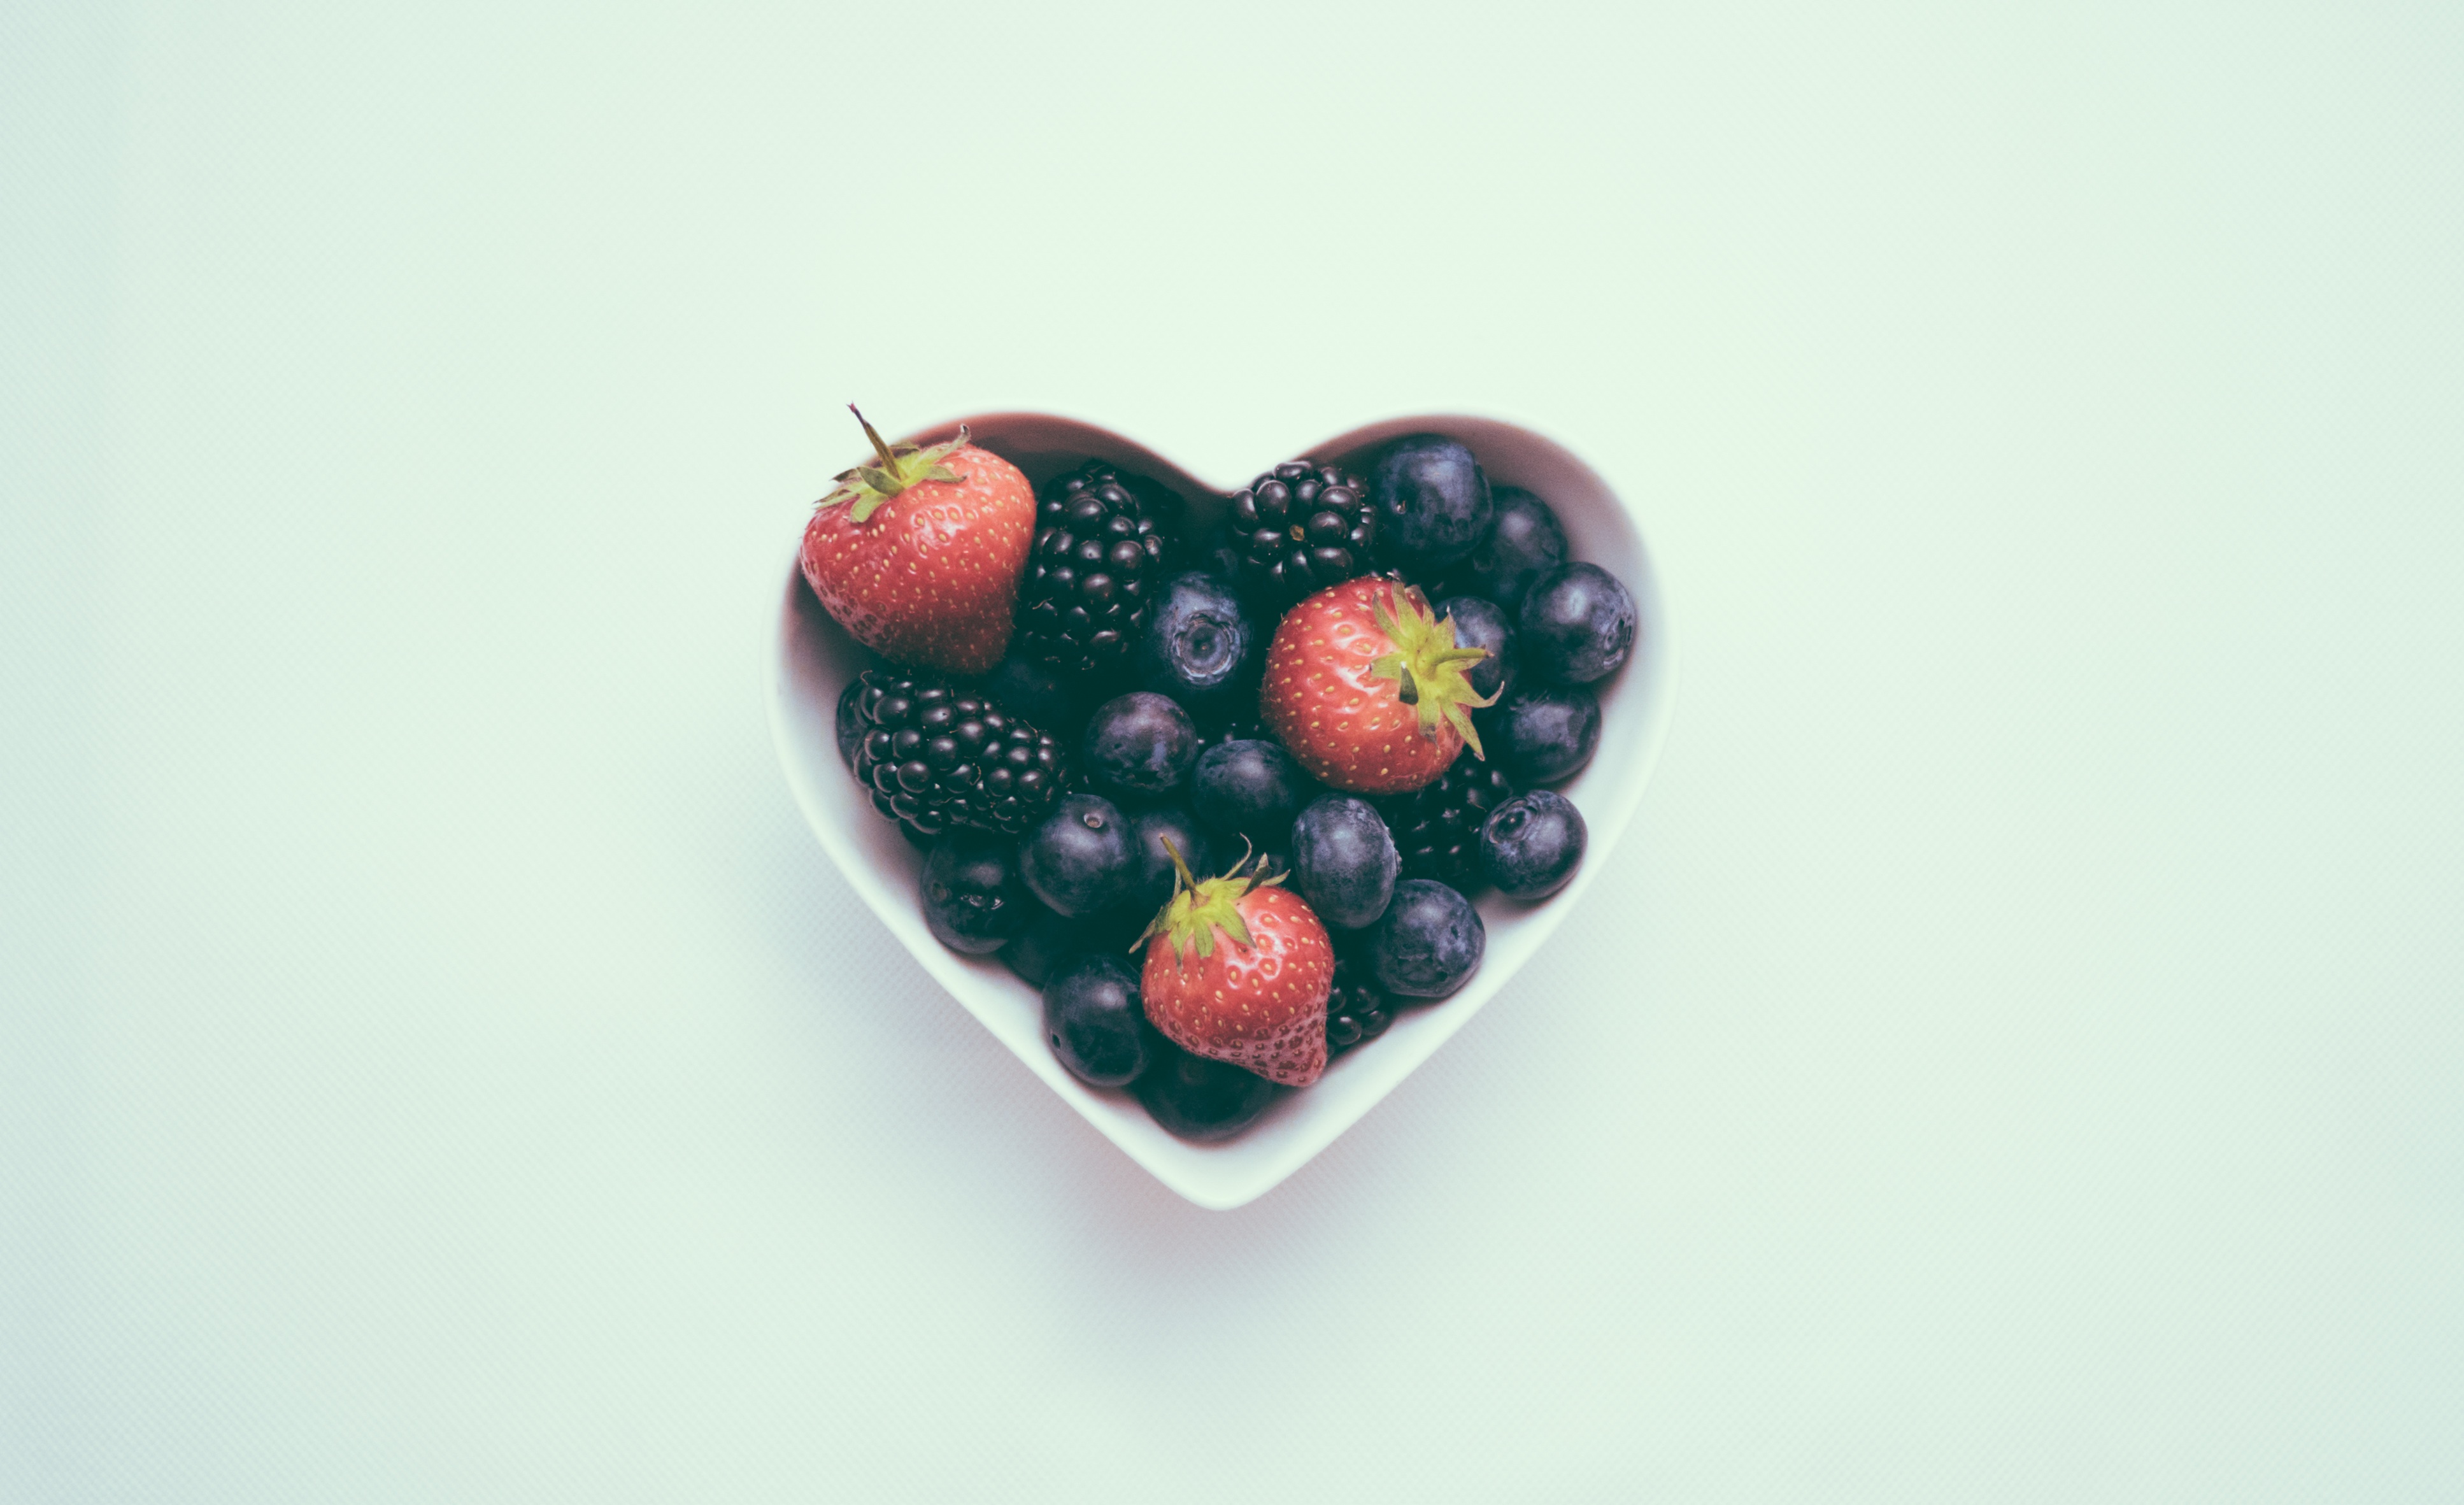 blueberries contain vitamin C, potassium and fiber